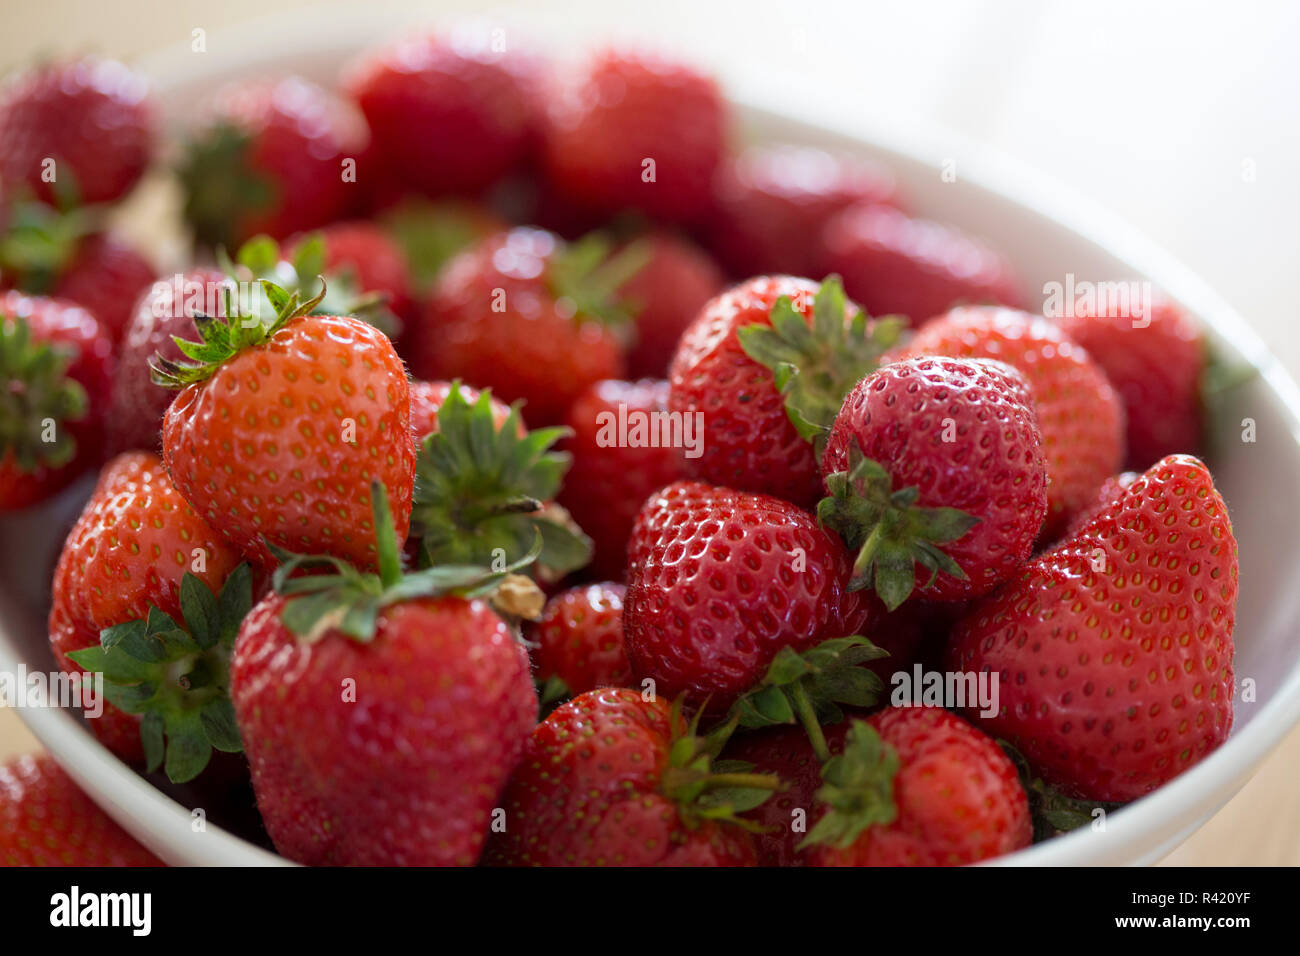 Fresh, handpicked strawberries Stock Photo